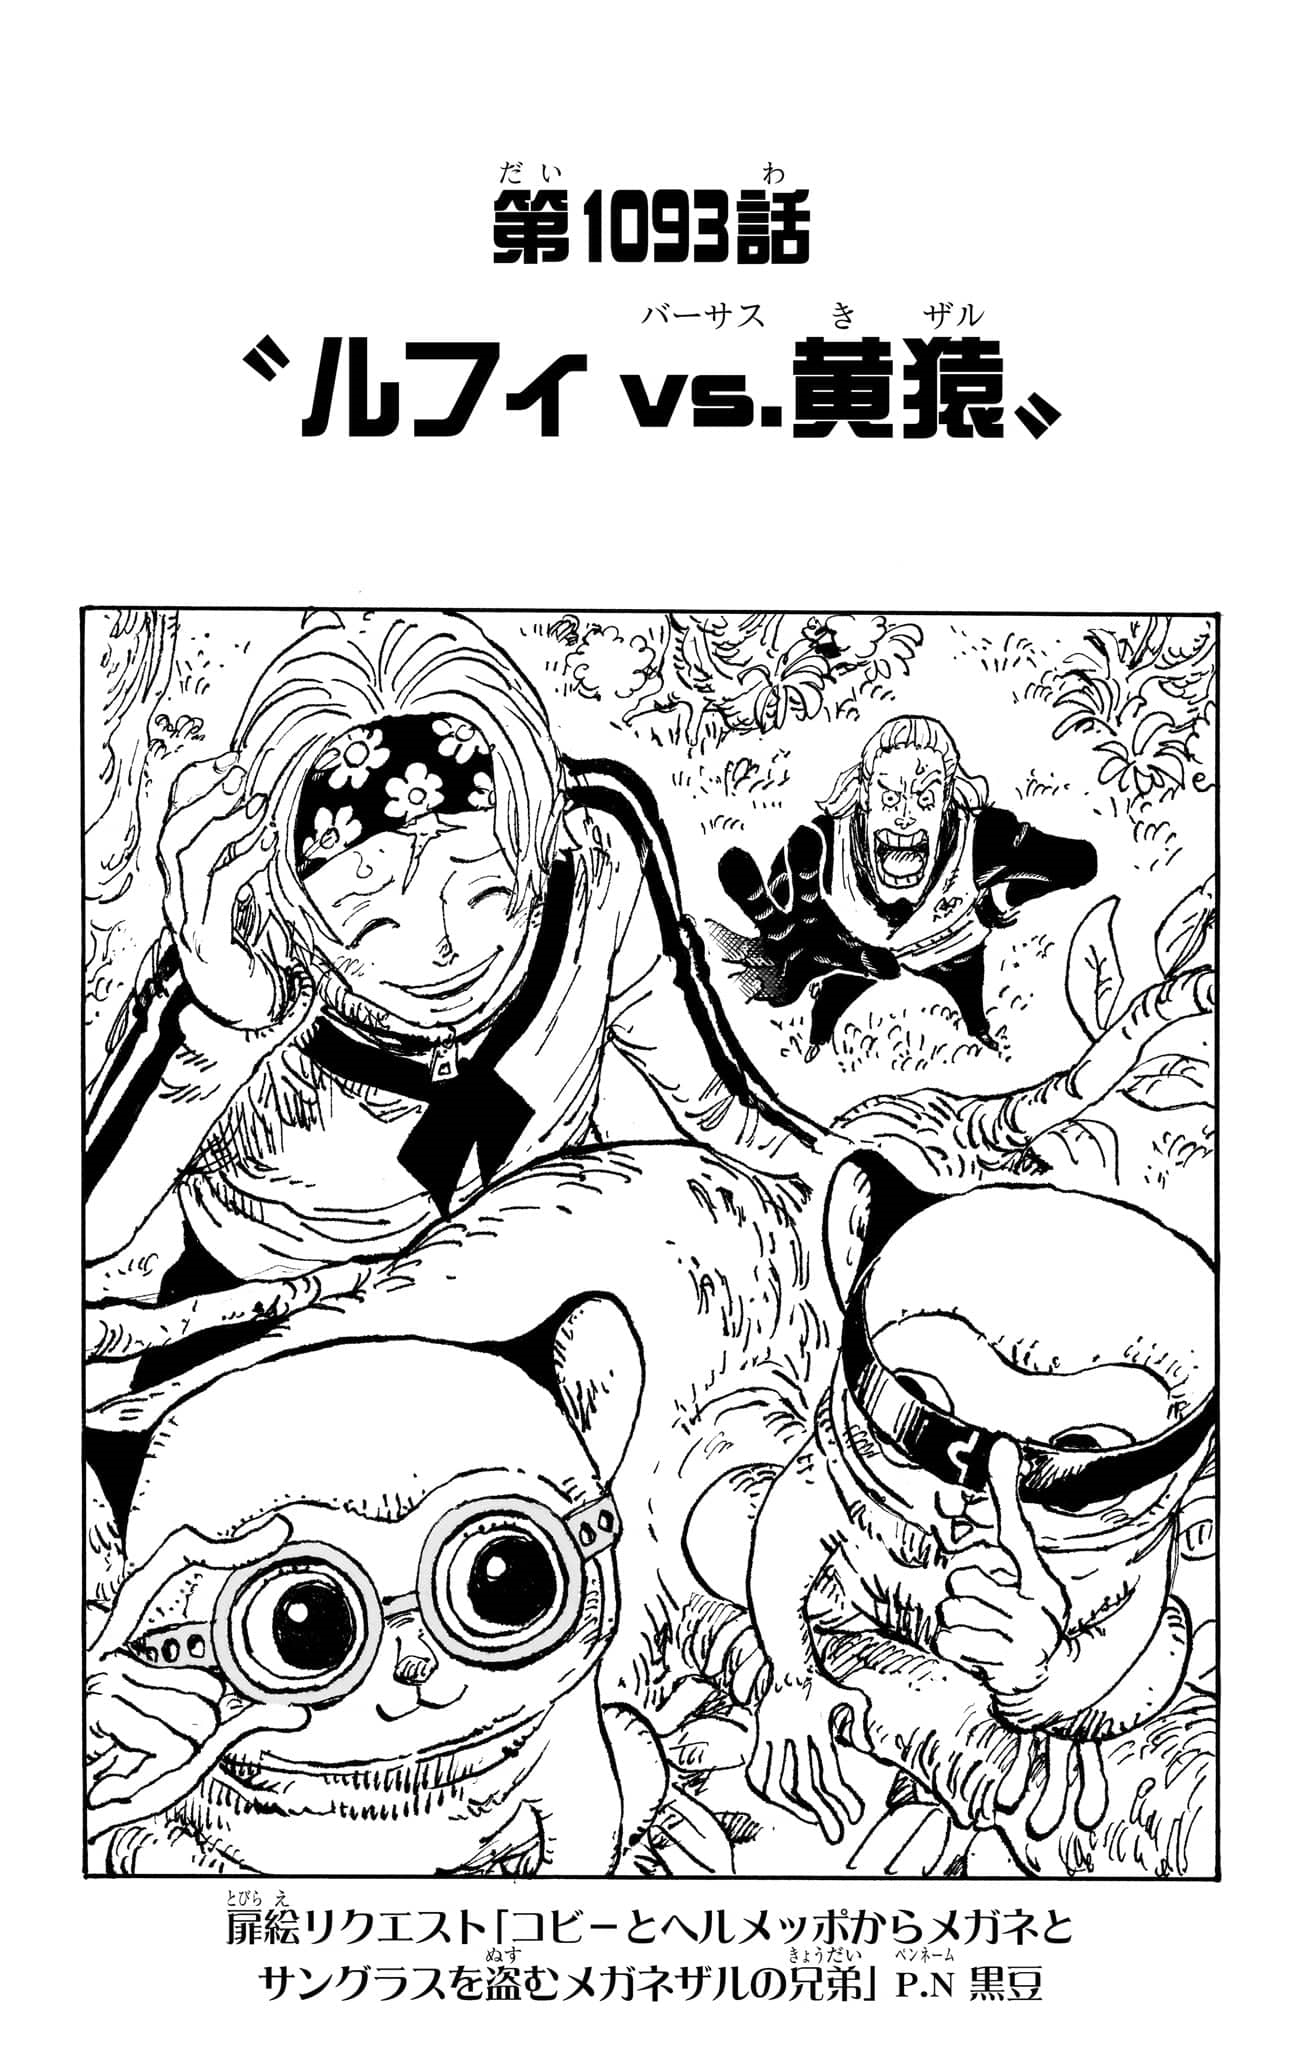 Read One Piece Chapter 1065 on Mangakakalot